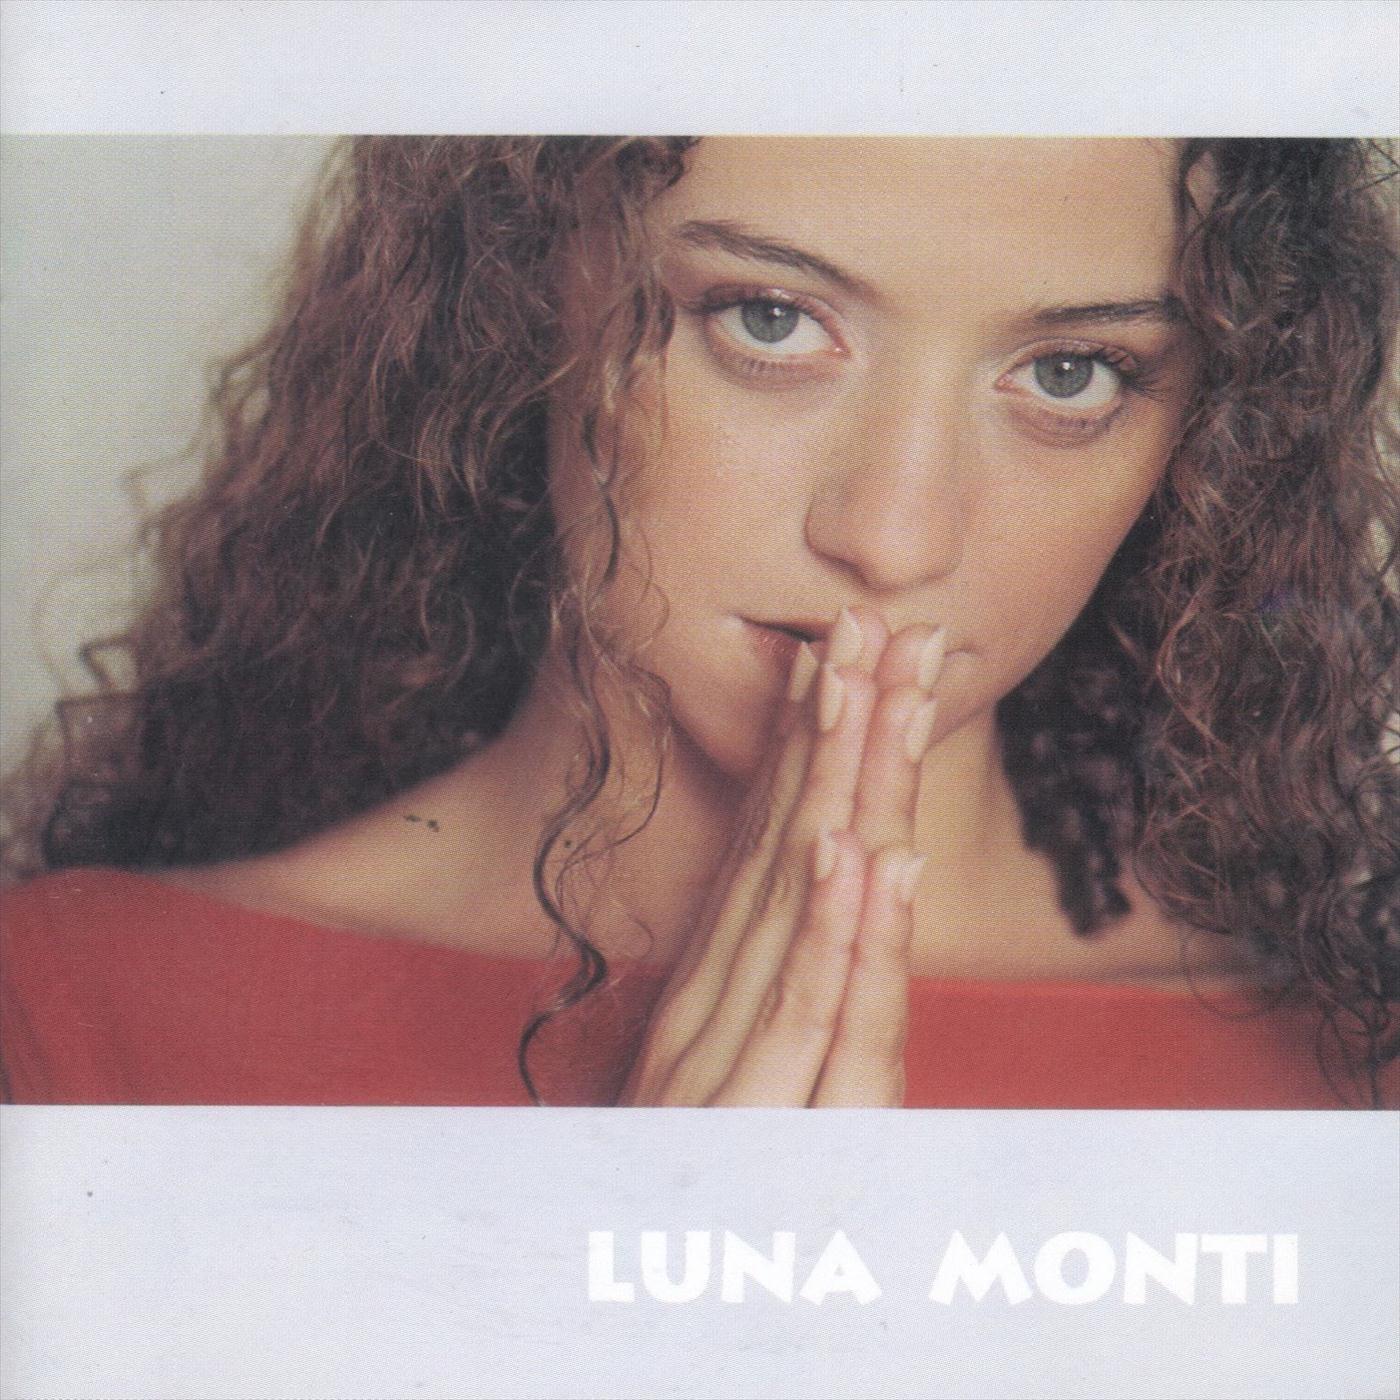 Luna Monti - María Landó